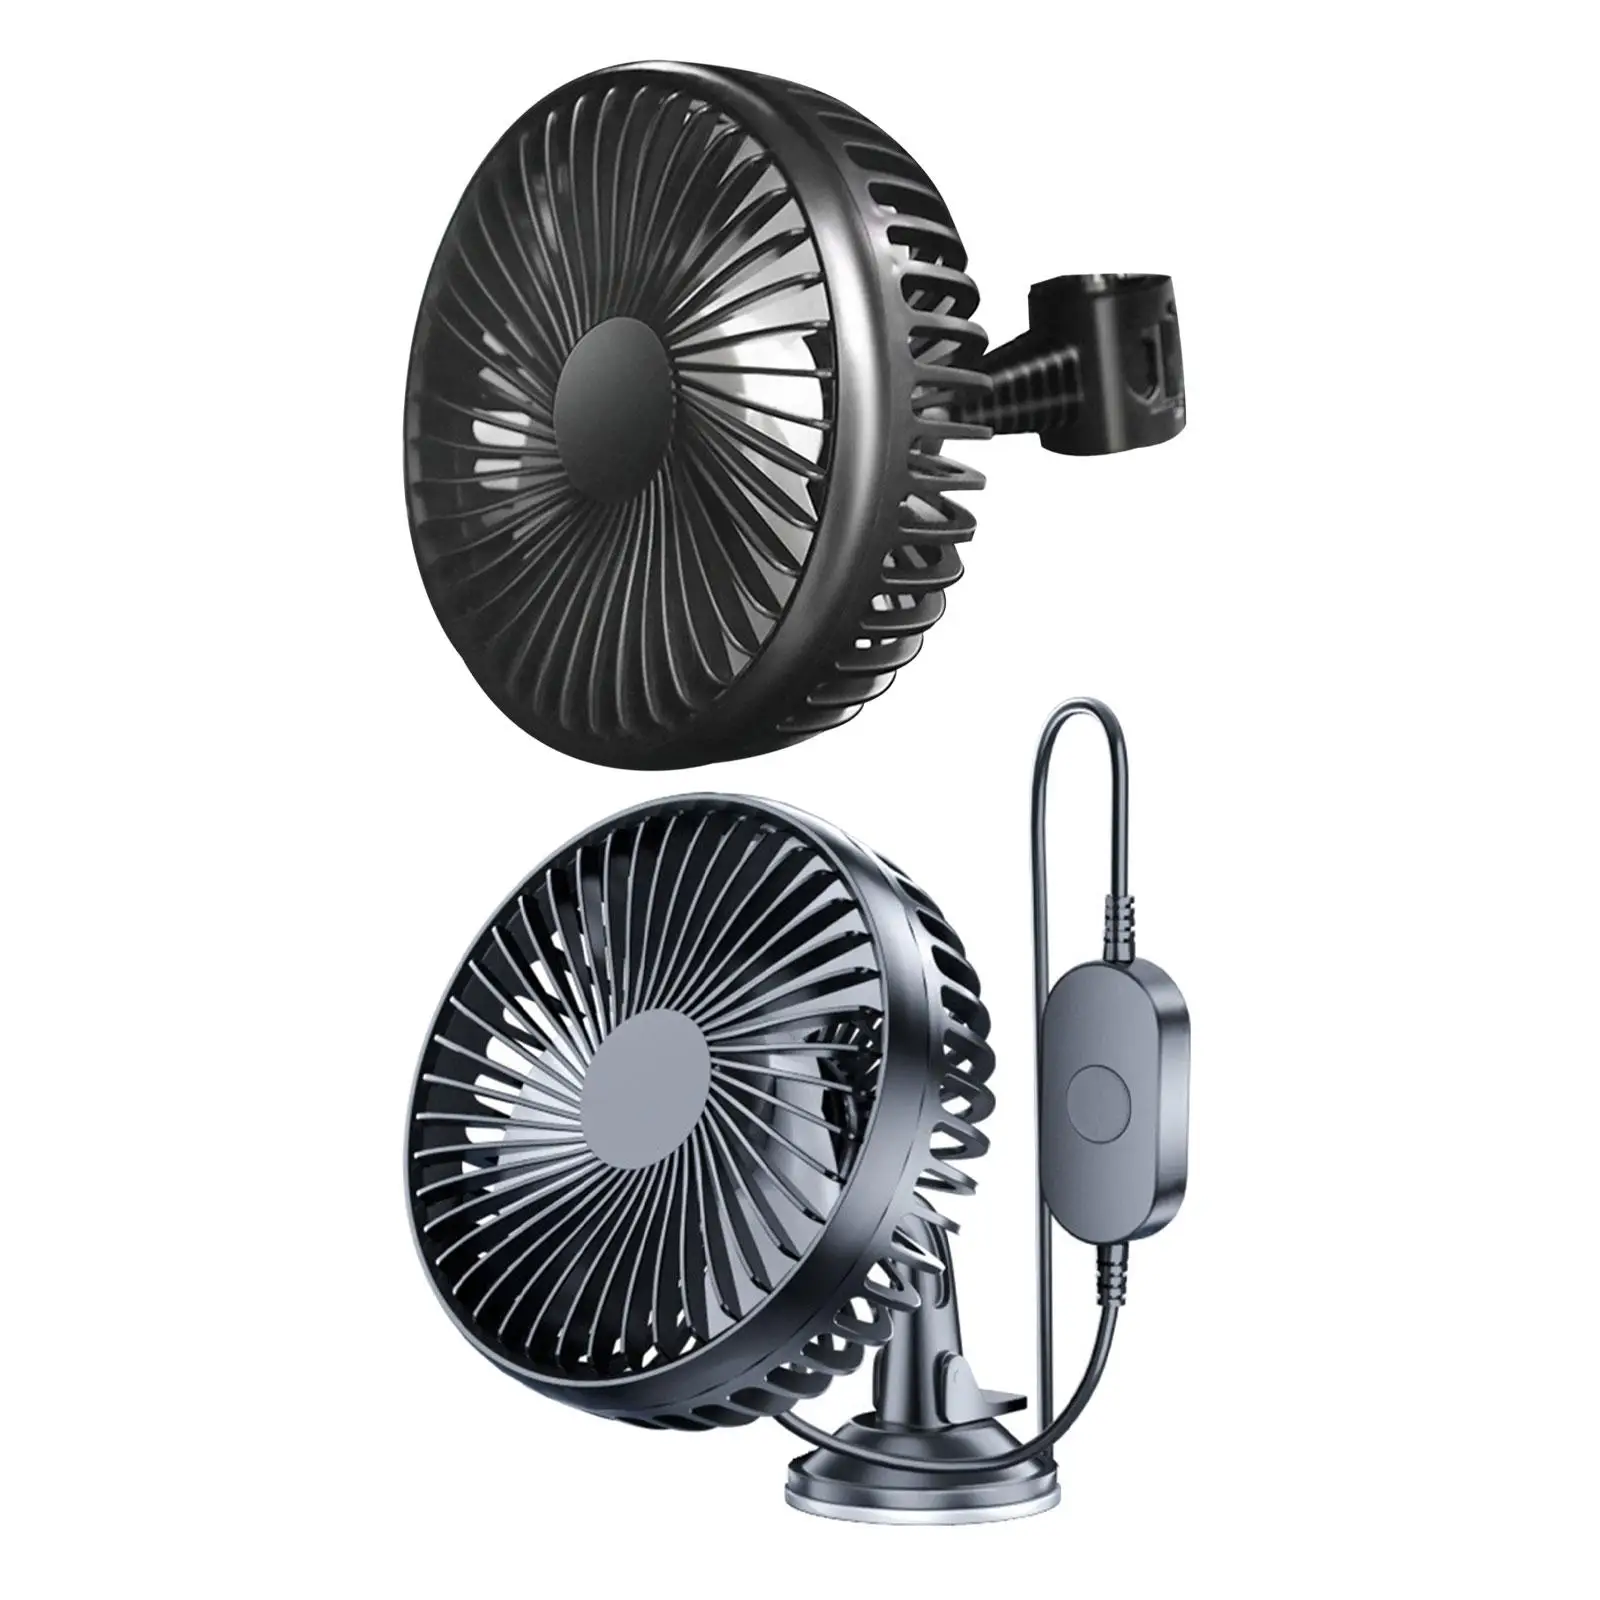 Electric Car Cooling Fan 12V 24V USB Sturdy Easily Install Black for Automobile Office and Home Use Adjustable Tilt Adjustment